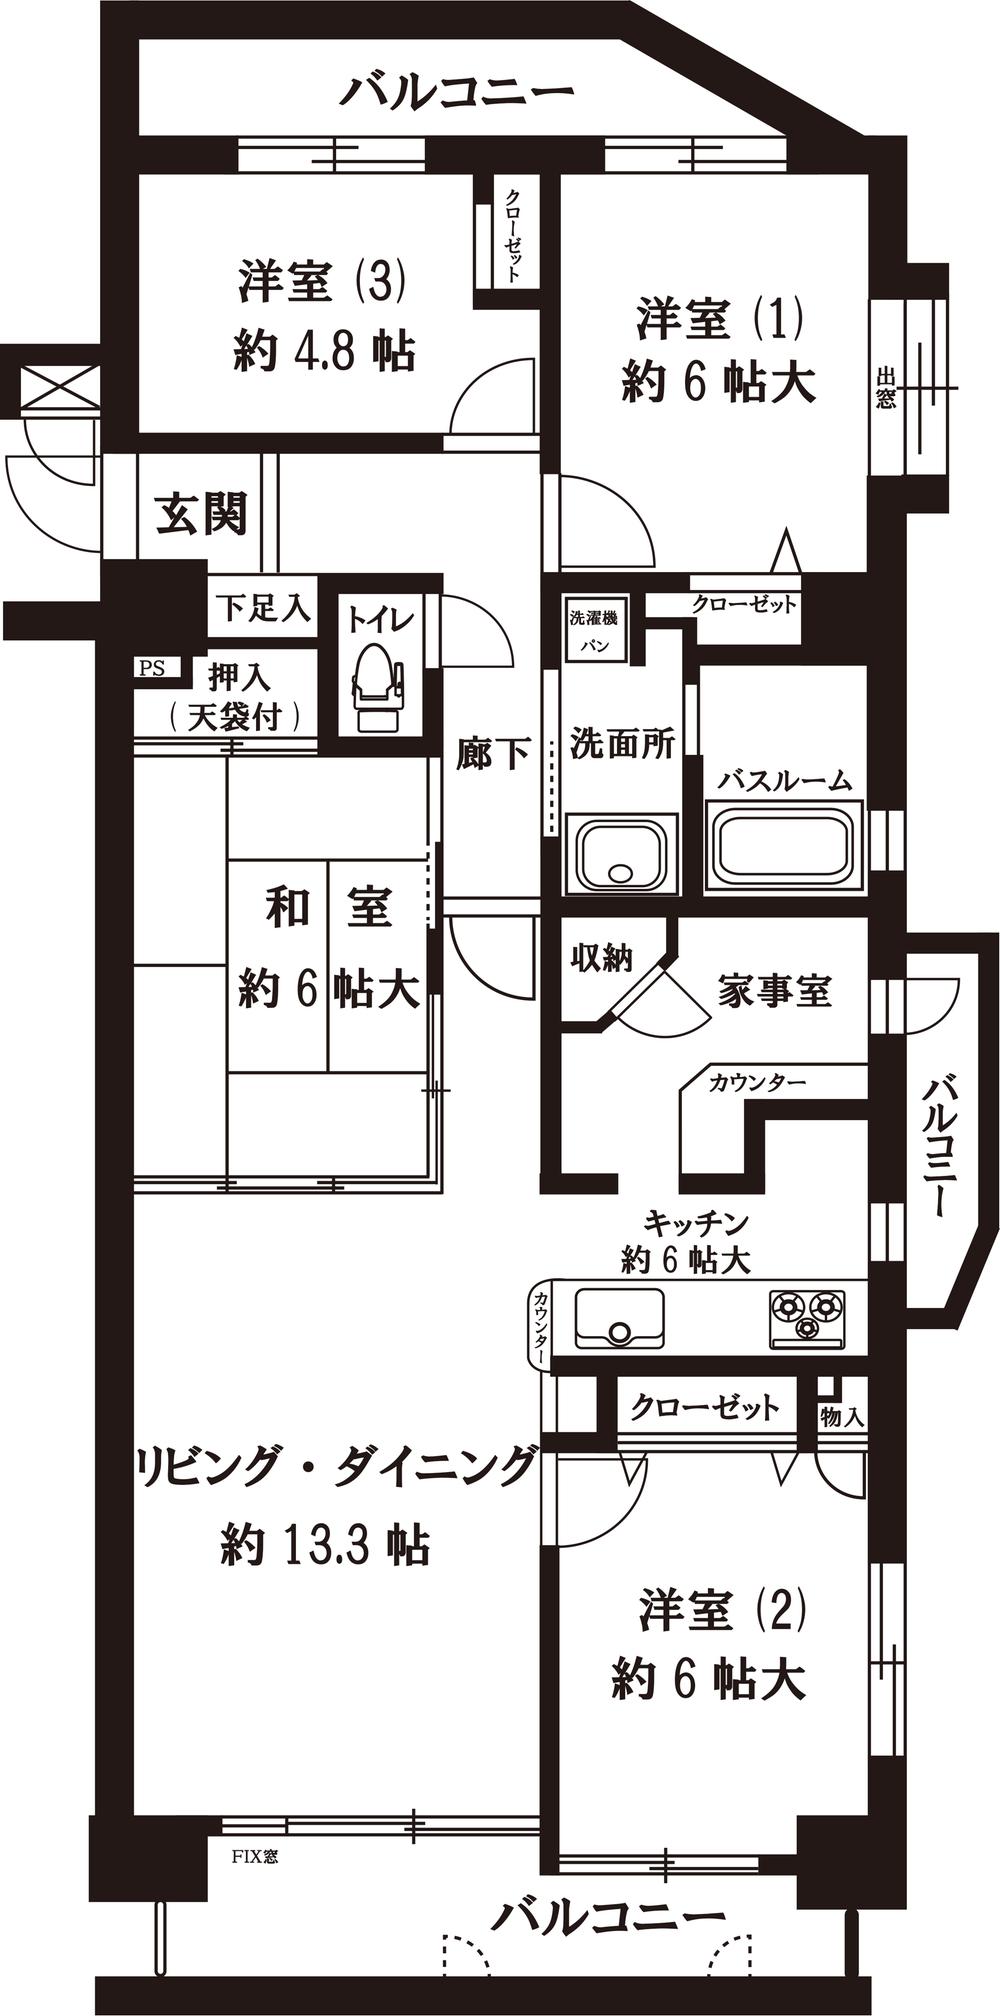 Floor plan. 4LDK, Price 32,300,000 yen, Occupied area 90.11 sq m , Balcony area 15.55 sq m indoor floor plan